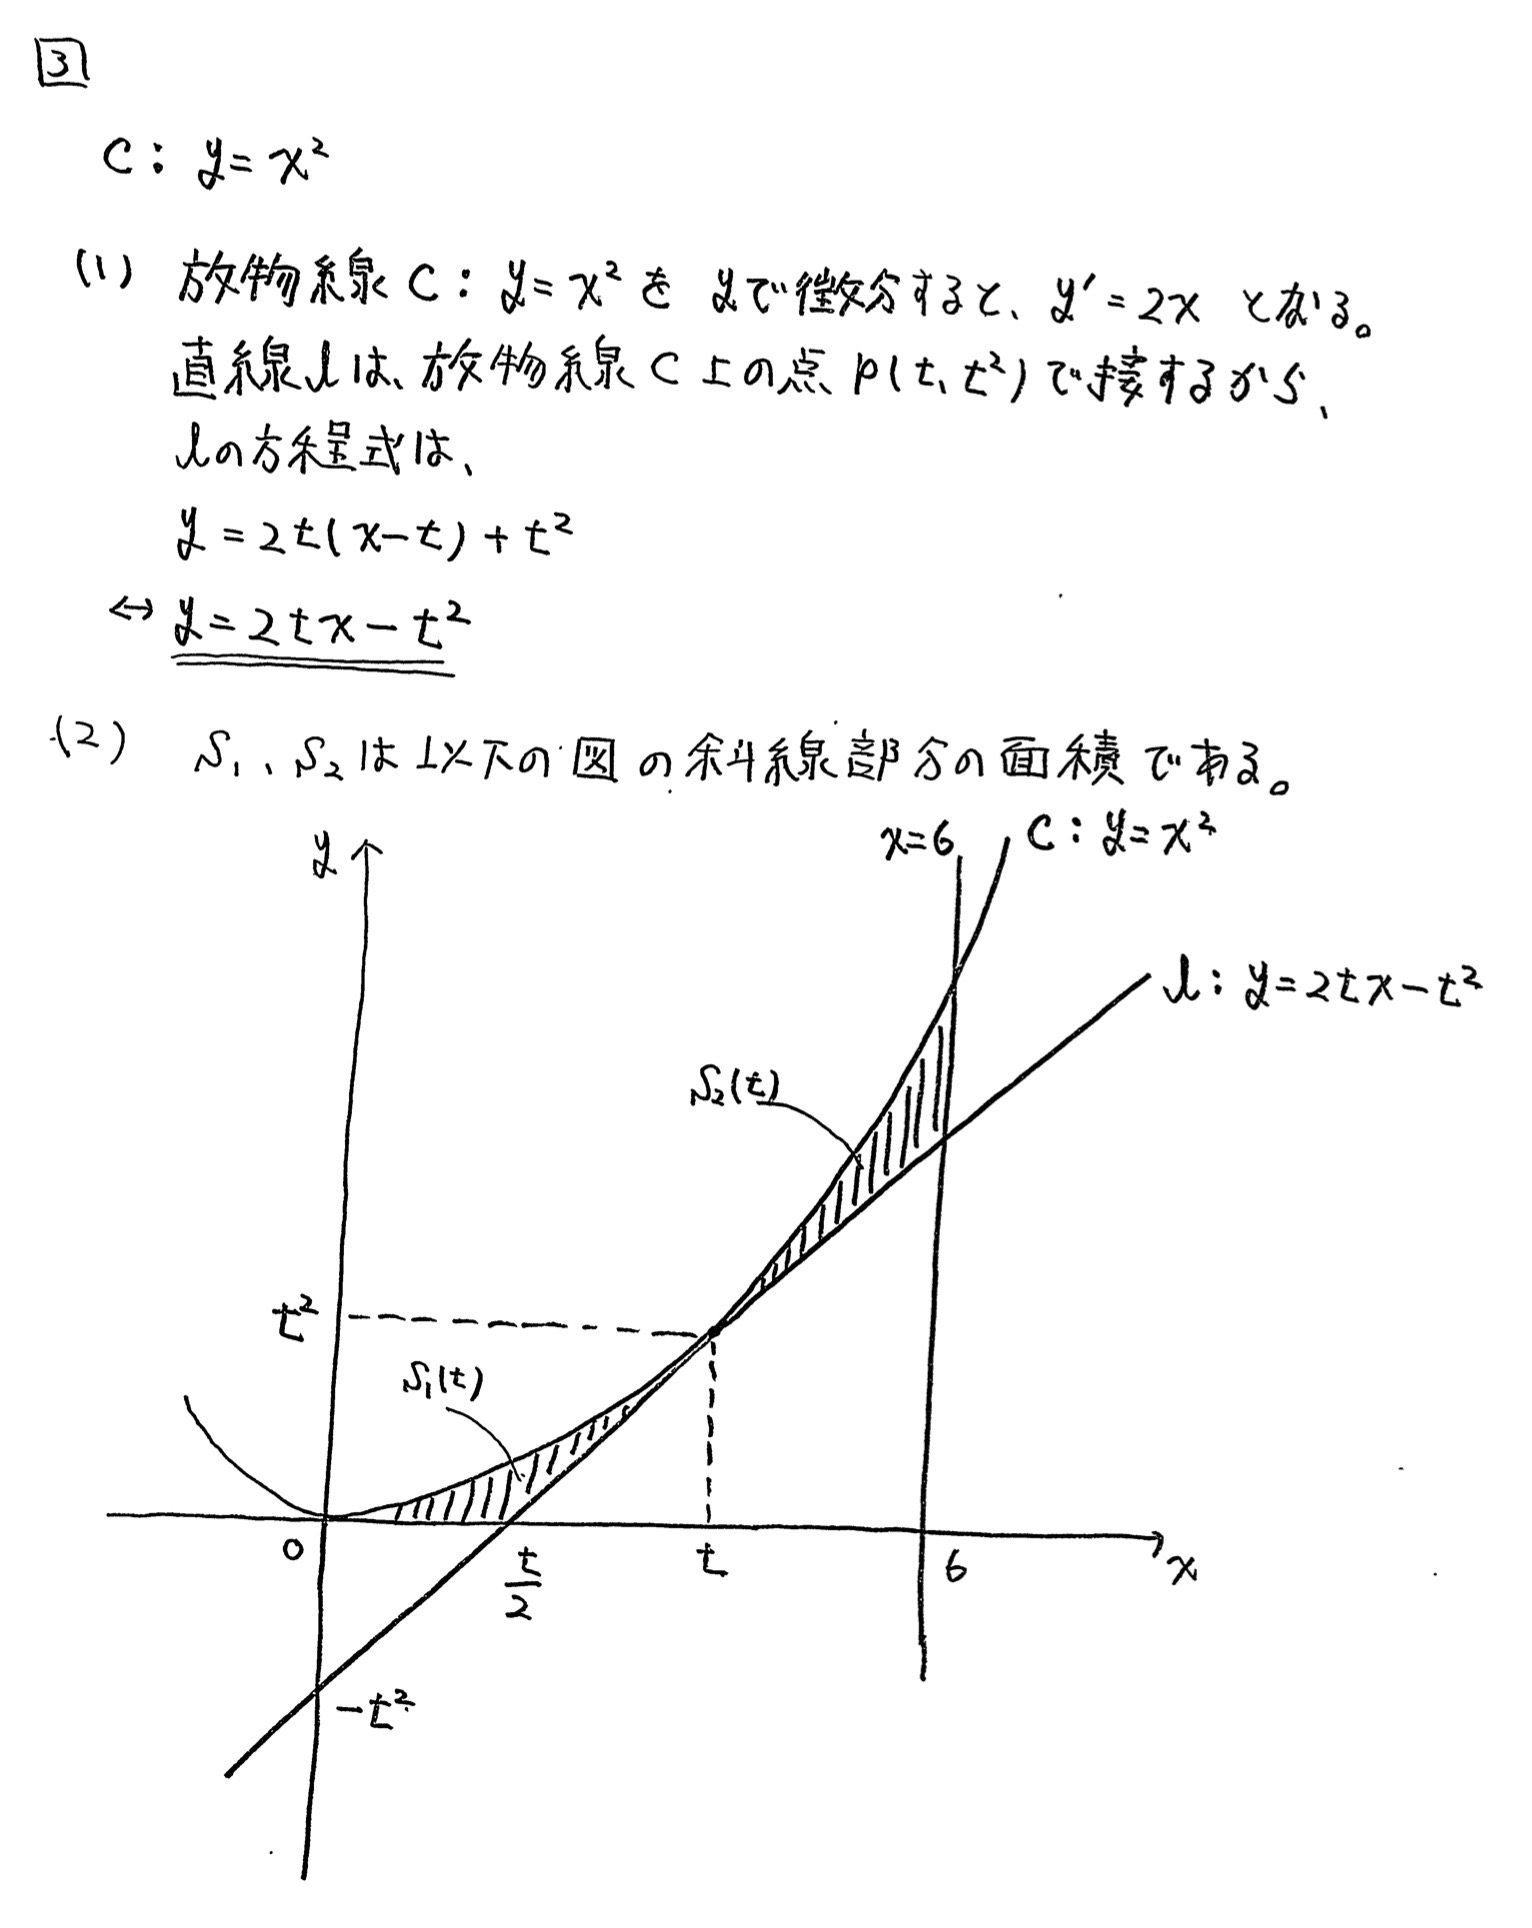 佐賀大学入試文系数学2022年(令和4年)過去問題(解答・解説)